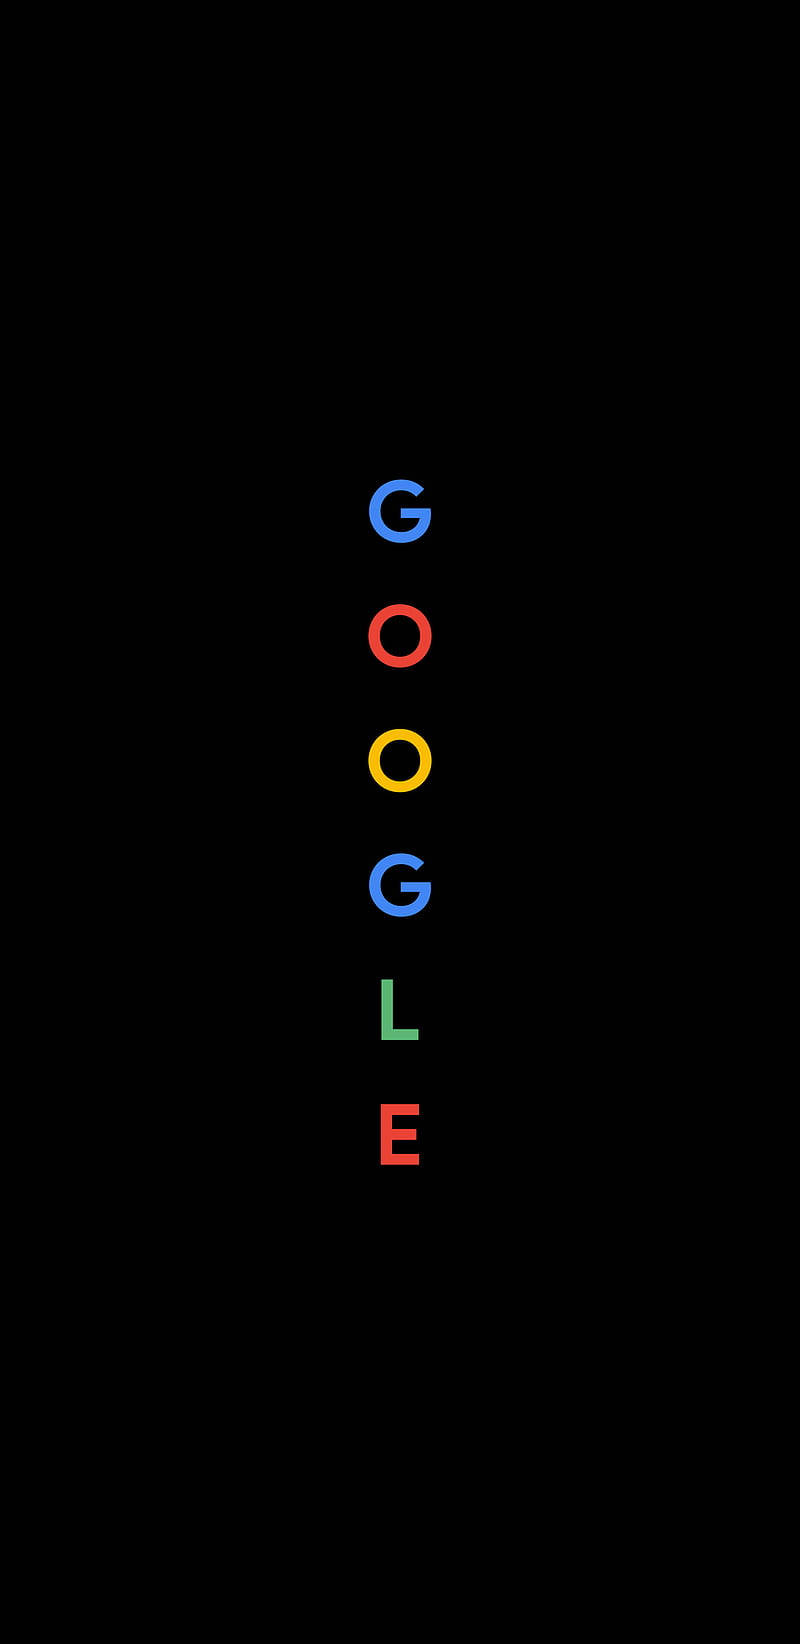 Vertical Google Text Wallpaper